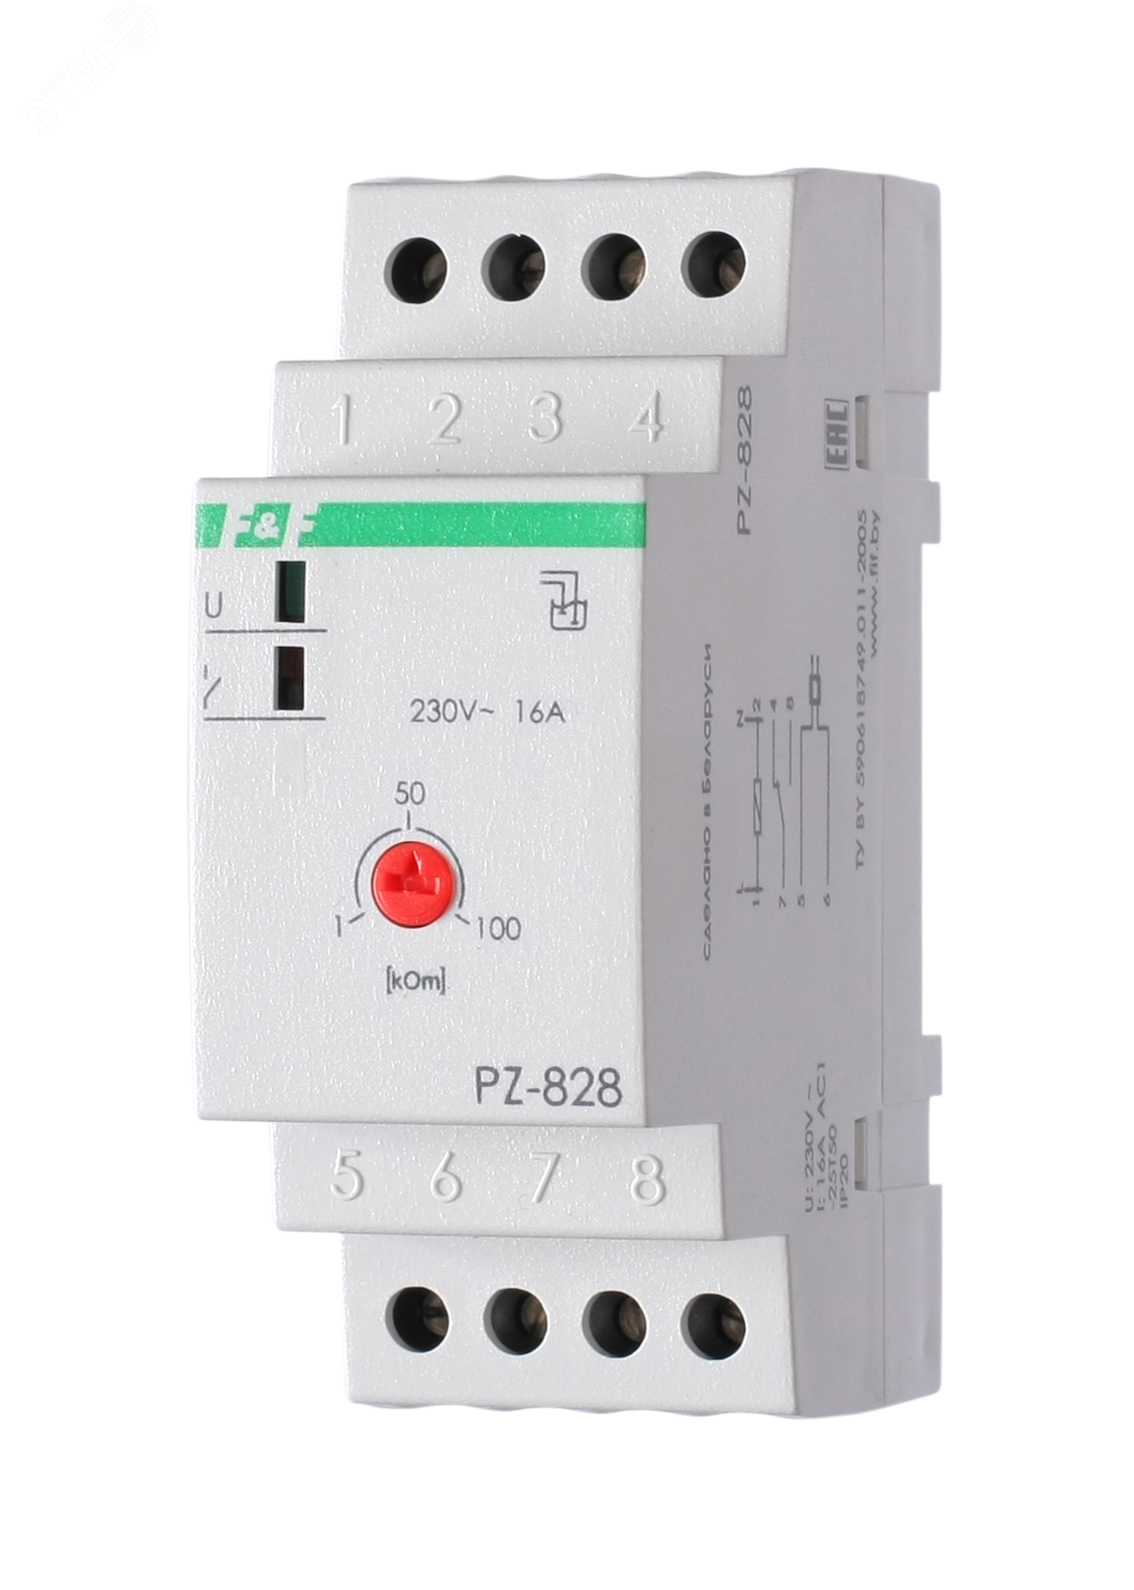 Реле контроля уровня PZ-828 жидкости без датчика EA08.001.006 Евроавтоматика F&F